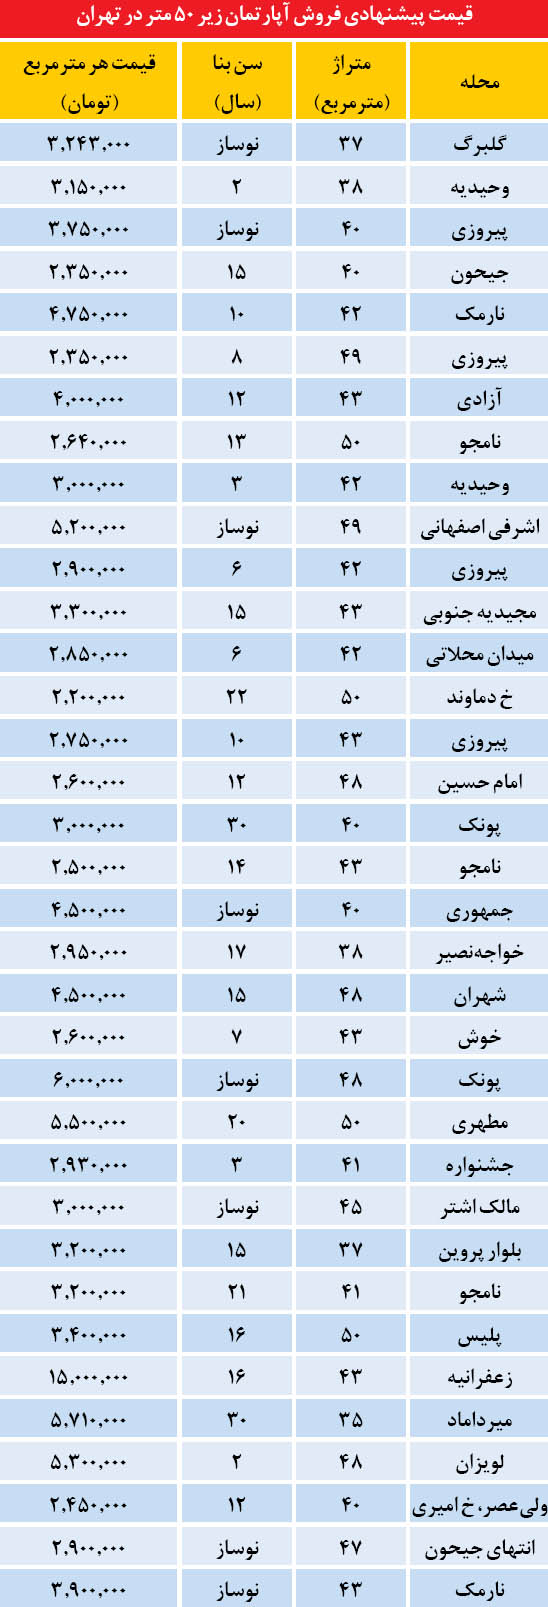 قیمت آپاتمان های زیر 50 متر در تهران (جدول)